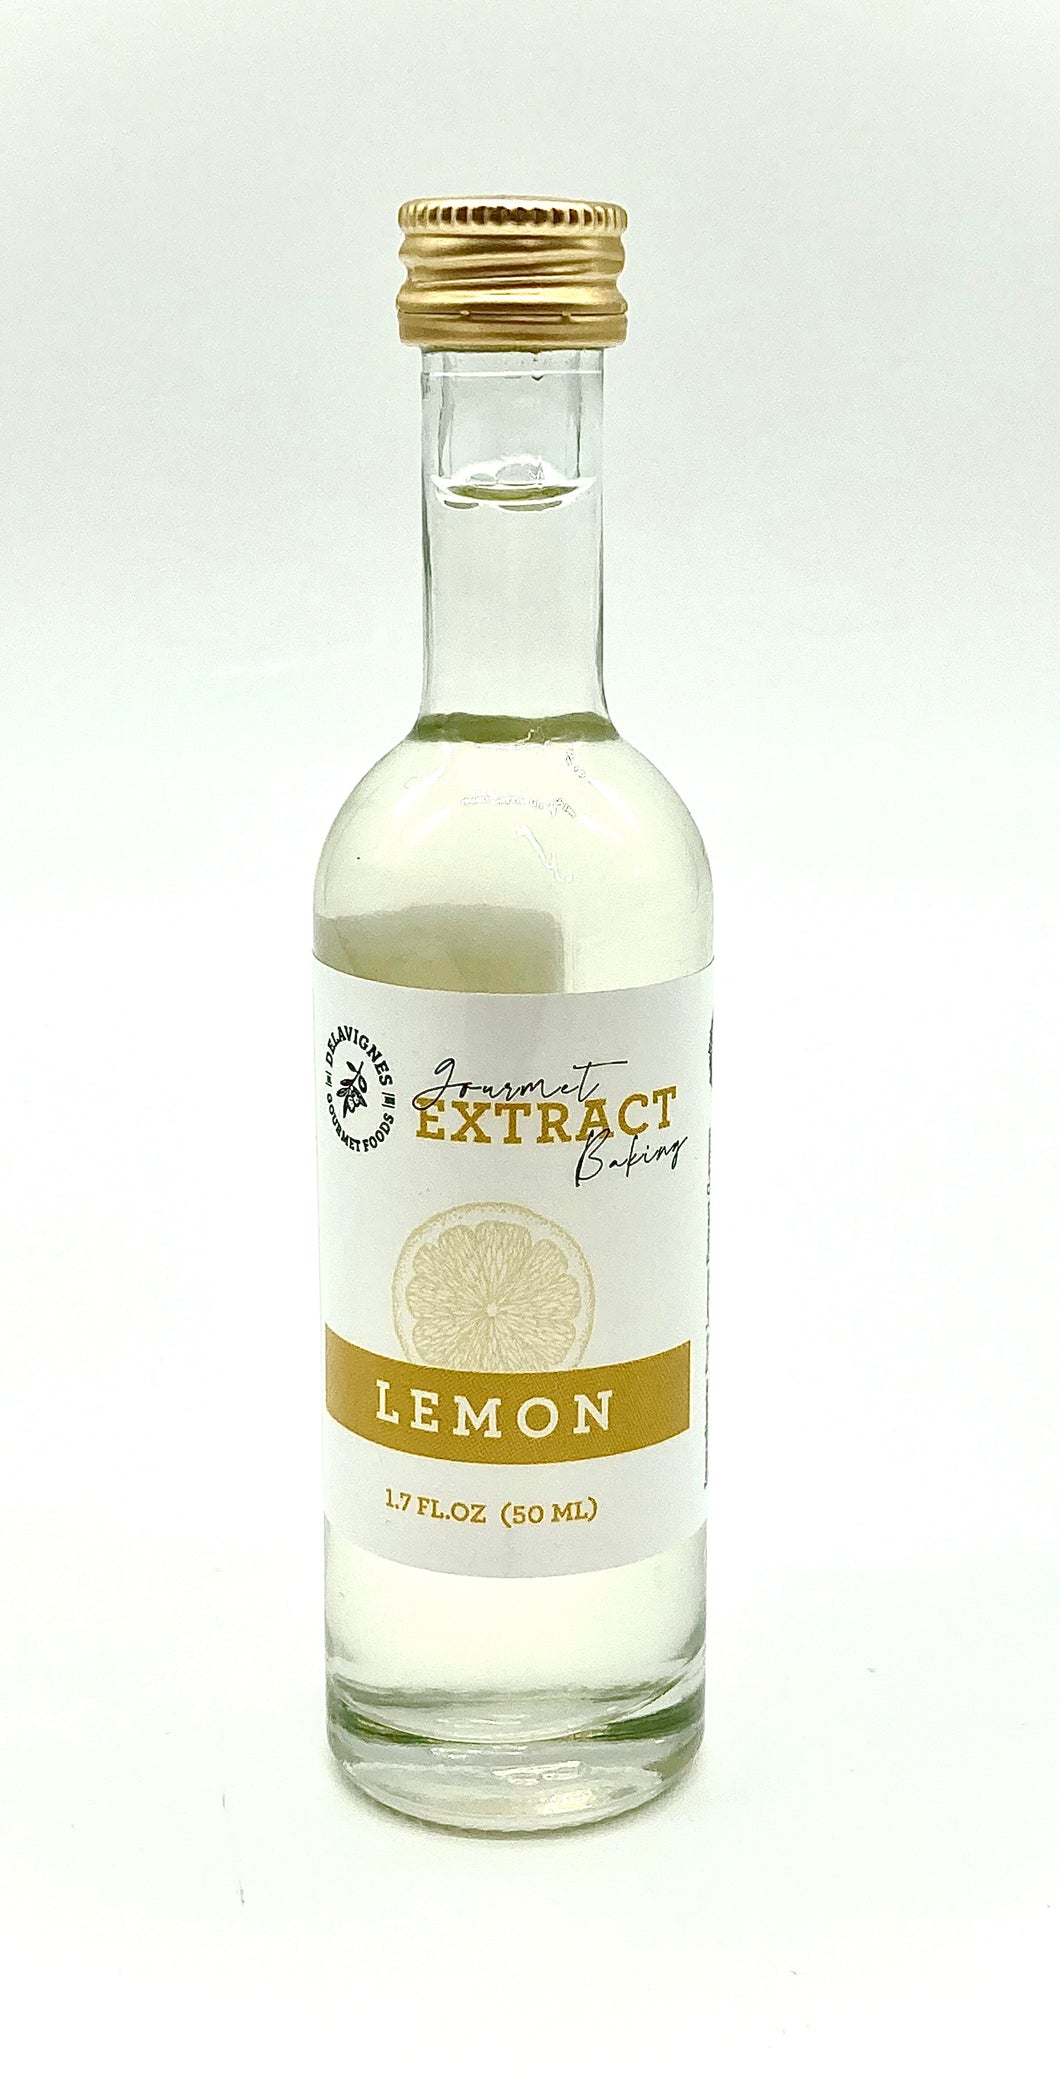 Delavignes 1.75oz Premium Lemon Extract